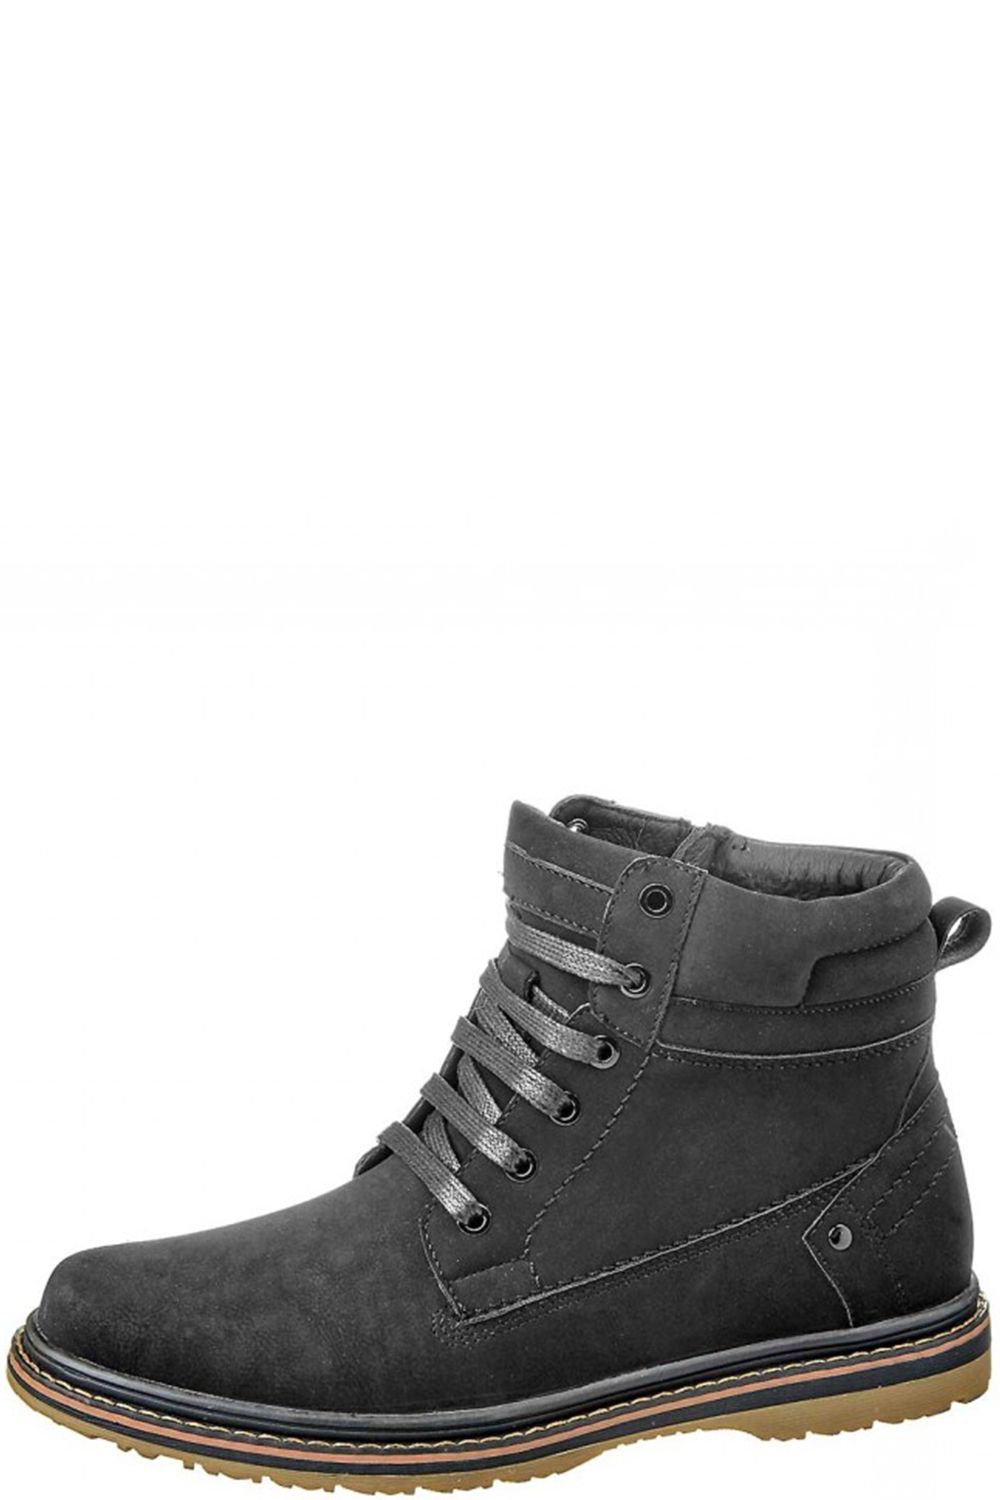 Ботинки Keddo, размер 38, цвет черный 568918/06-03 - фото 1